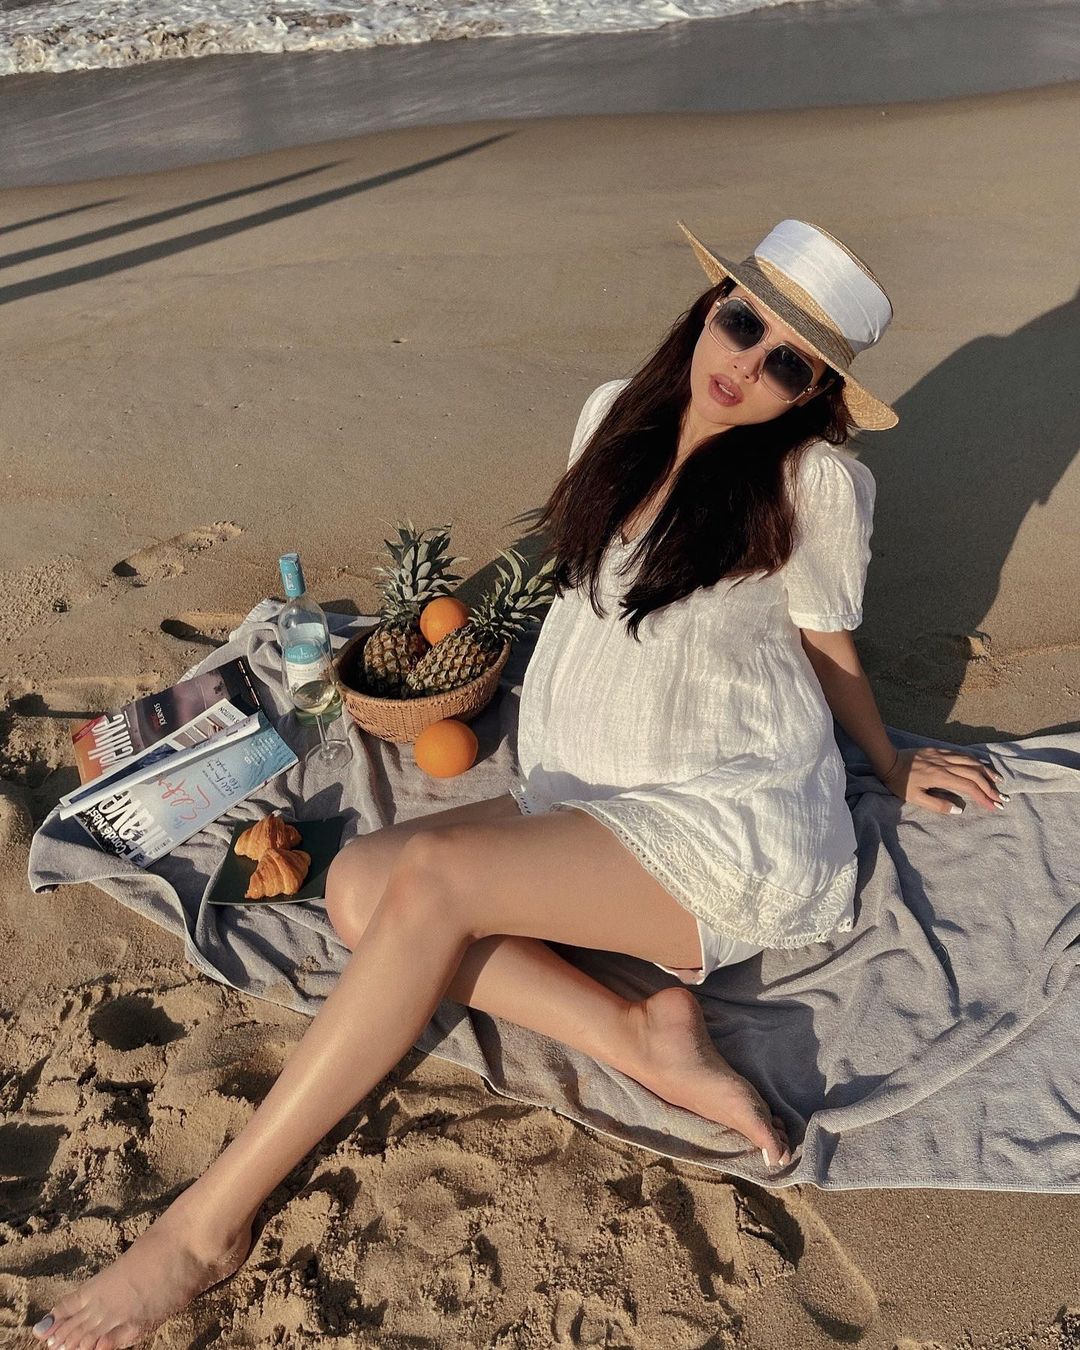 Mang bầu ở những tháng cuối của thai kỳ, Phanh Lee vẫn giữ được sắc vóc xinh đẹp, sang chảnh hiếm có. Nữ diễn viên bất chấp nắng nắng, tạo dáng khoe dáng trên bãi biển.